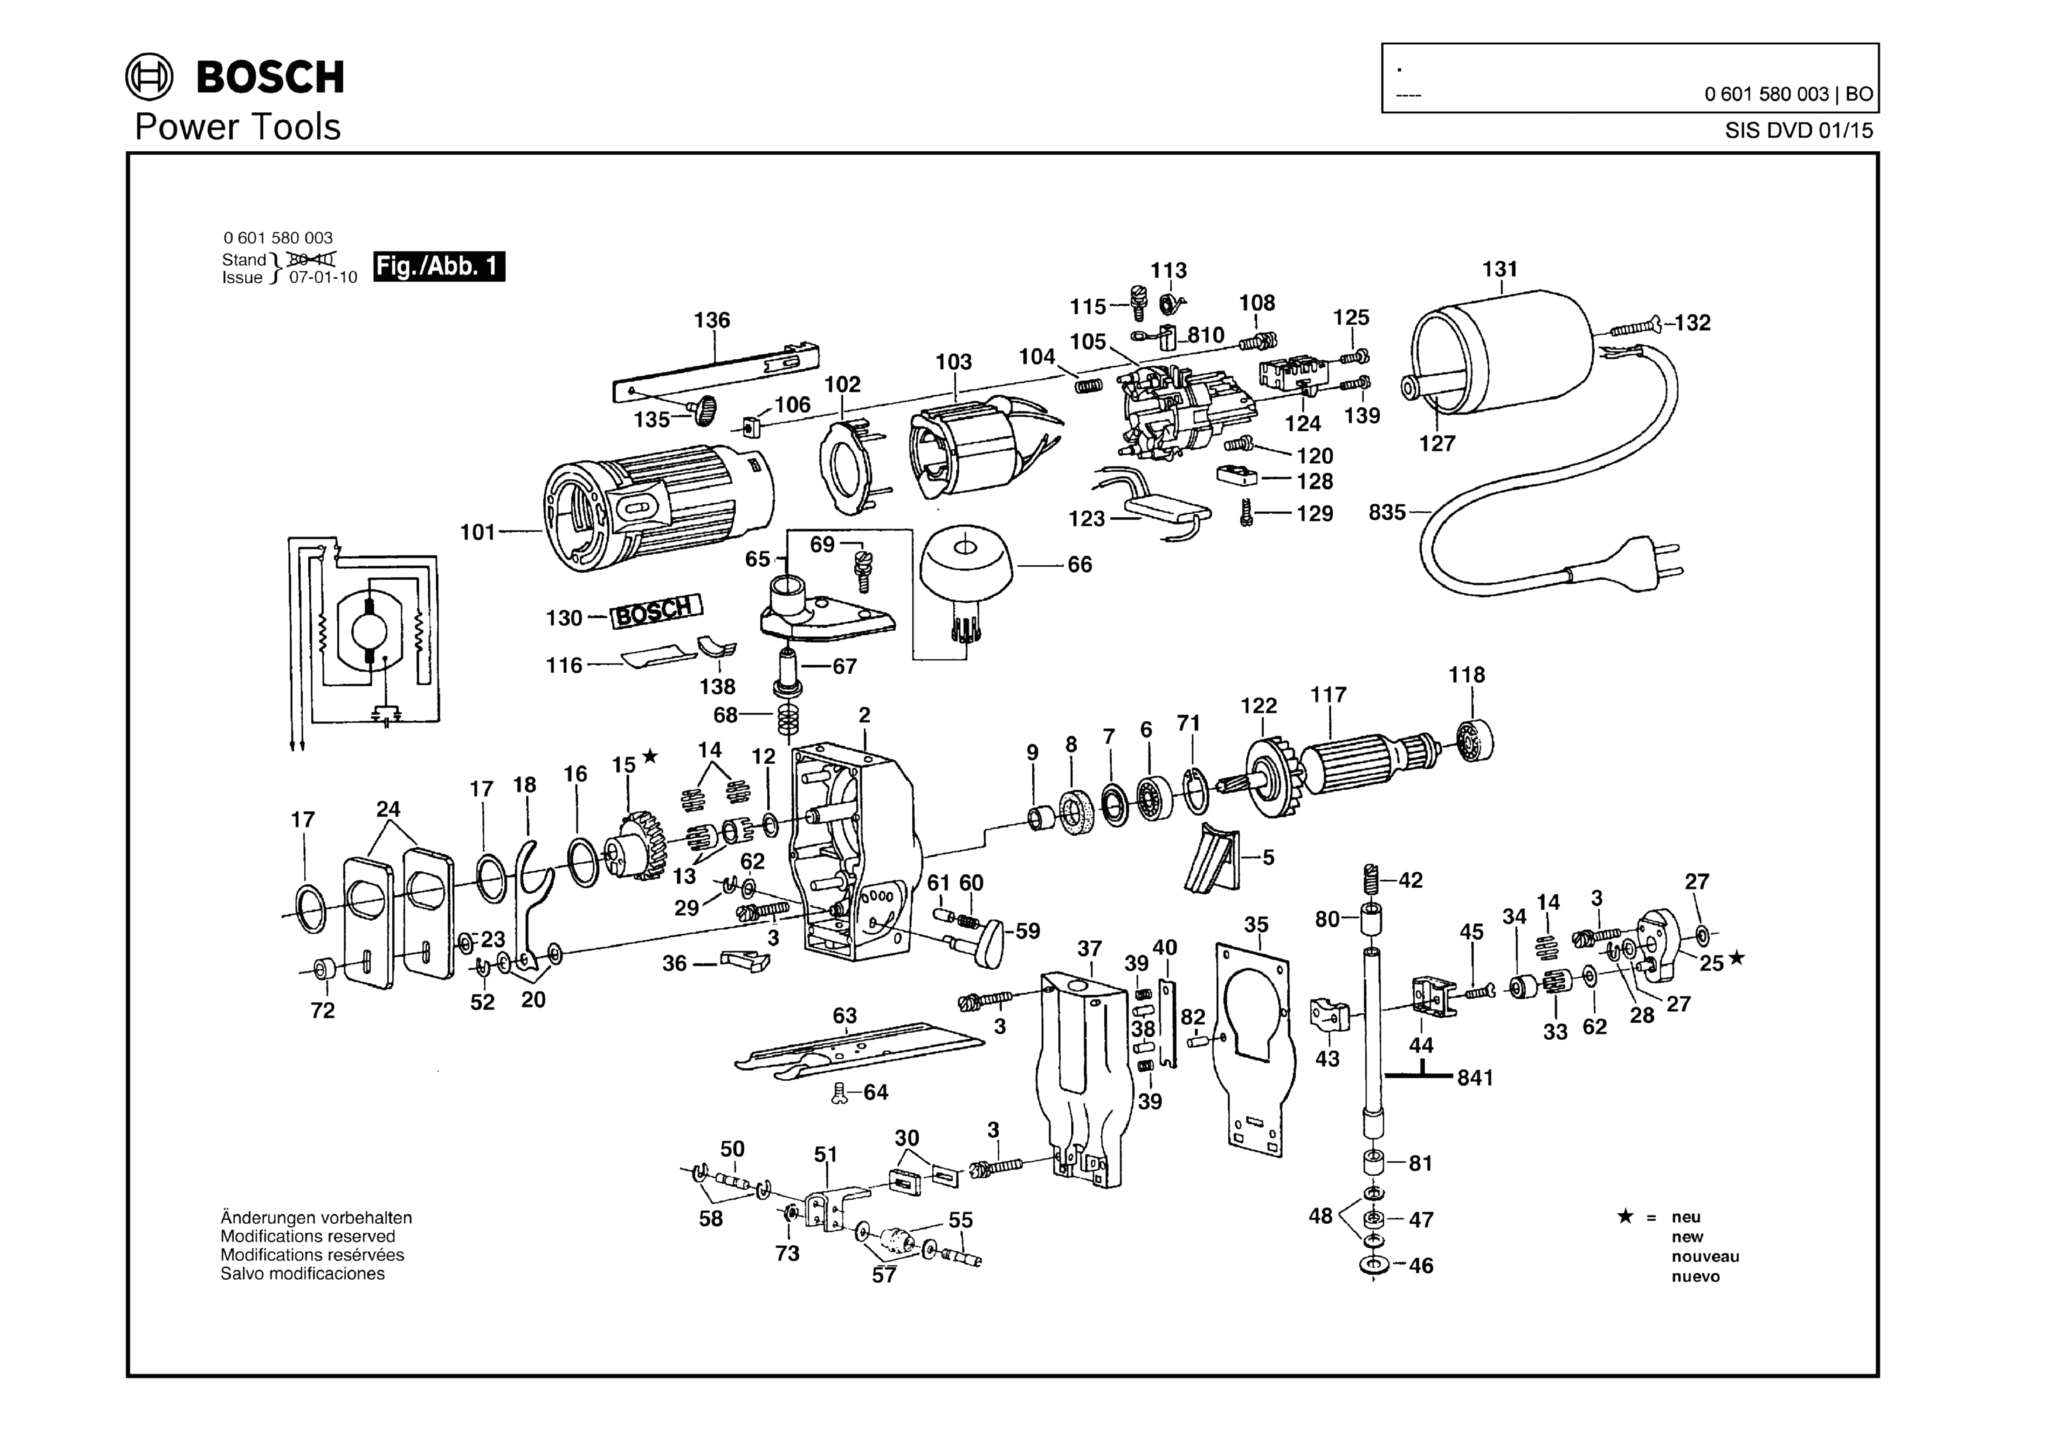 Запчасти, схема и деталировка Bosch (ТИП 0601580003)